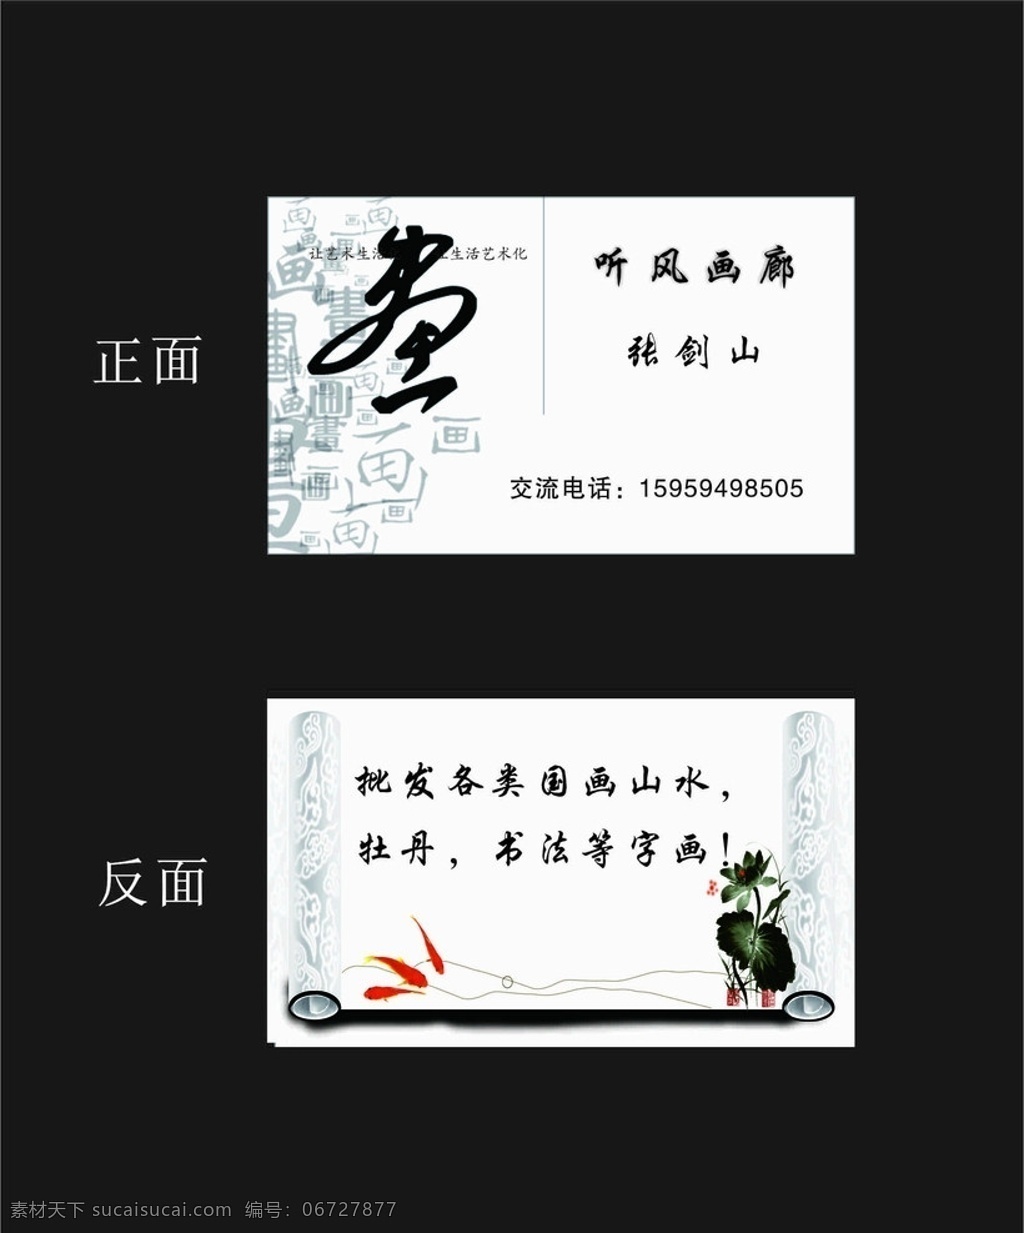 画廊名片 画廊 名片 艺术 荷花 卡片 中国风 古代 古老 水墨画 油画 名片卡片 矢量